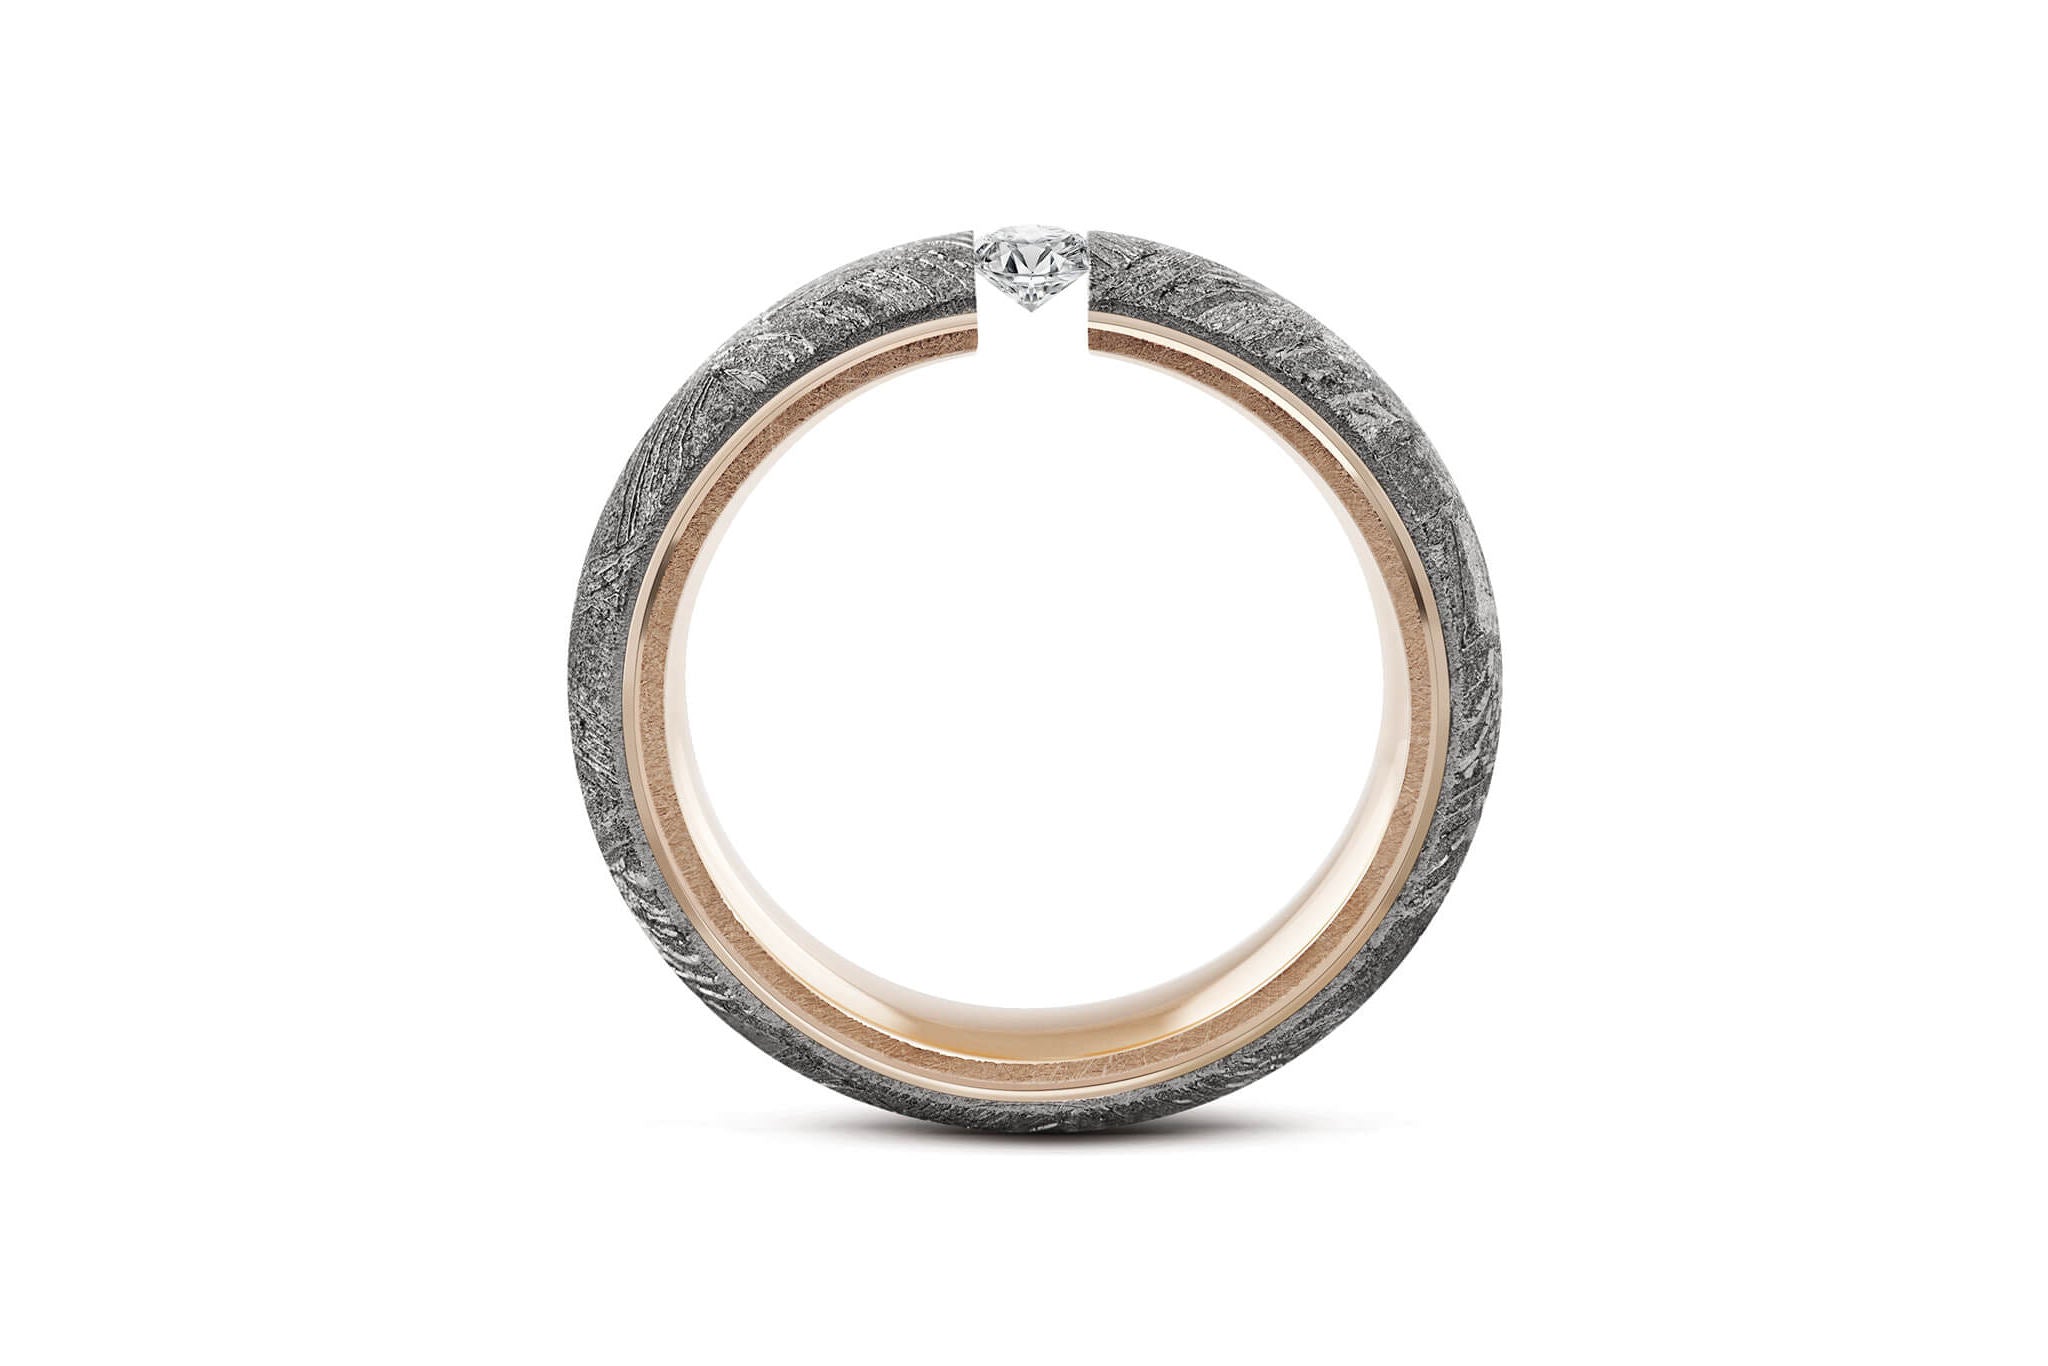 Eleganter Ring aus Meteorit mit wunderschönem metallisch glänzenden Widmanstätten Muster. Innenseite aus Gelb-Gold. Seitlich runde Kanten. Mittig ein Brillant in Spannfassung. Seitlich aufgenommen.